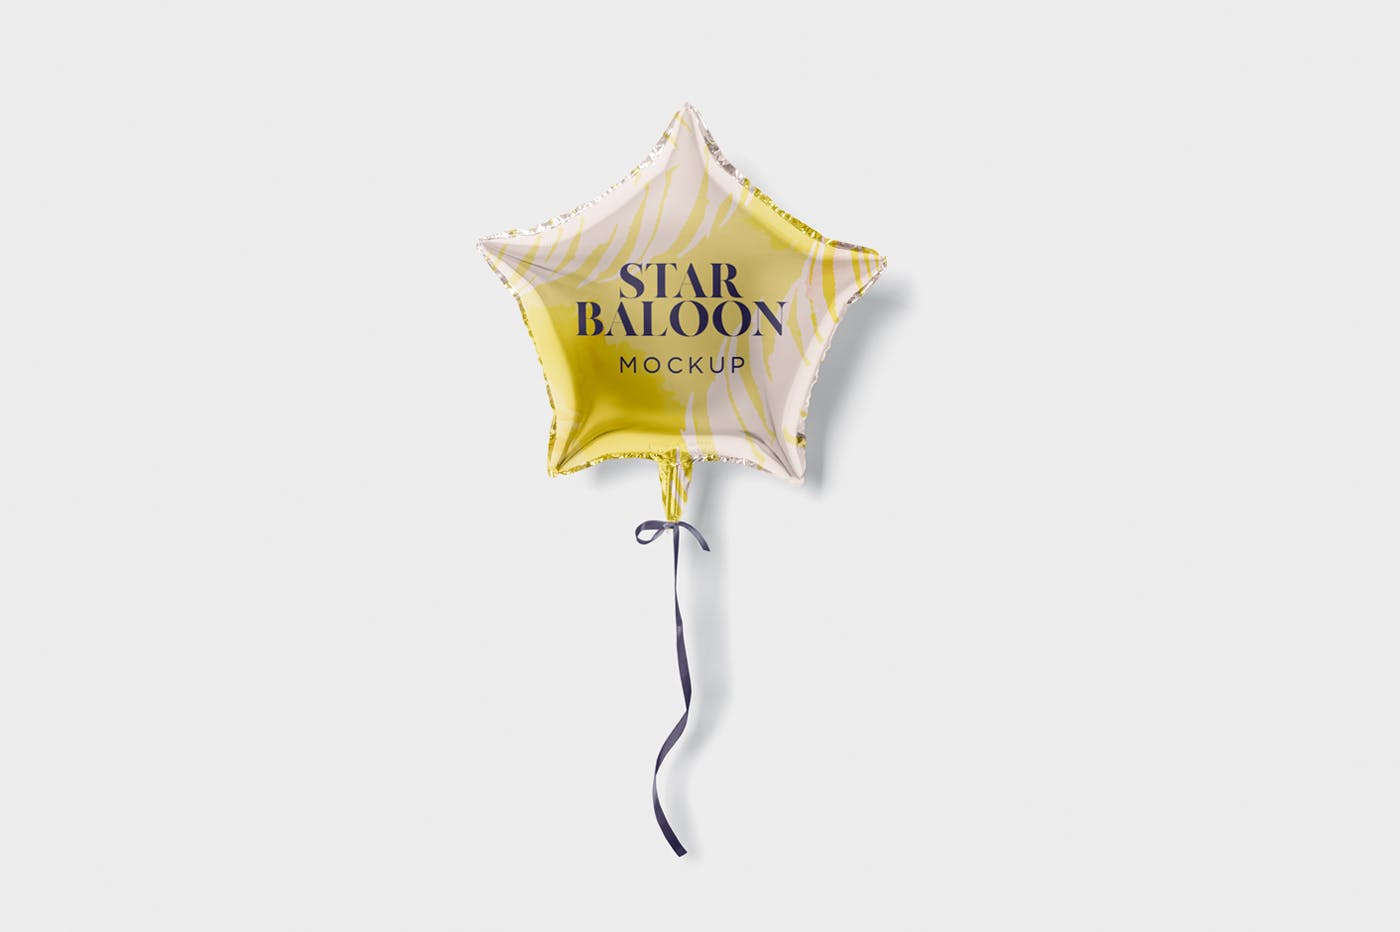 气球星星装饰物图案设计样机第一素材精选模板 Star Balloon Mockup插图(4)